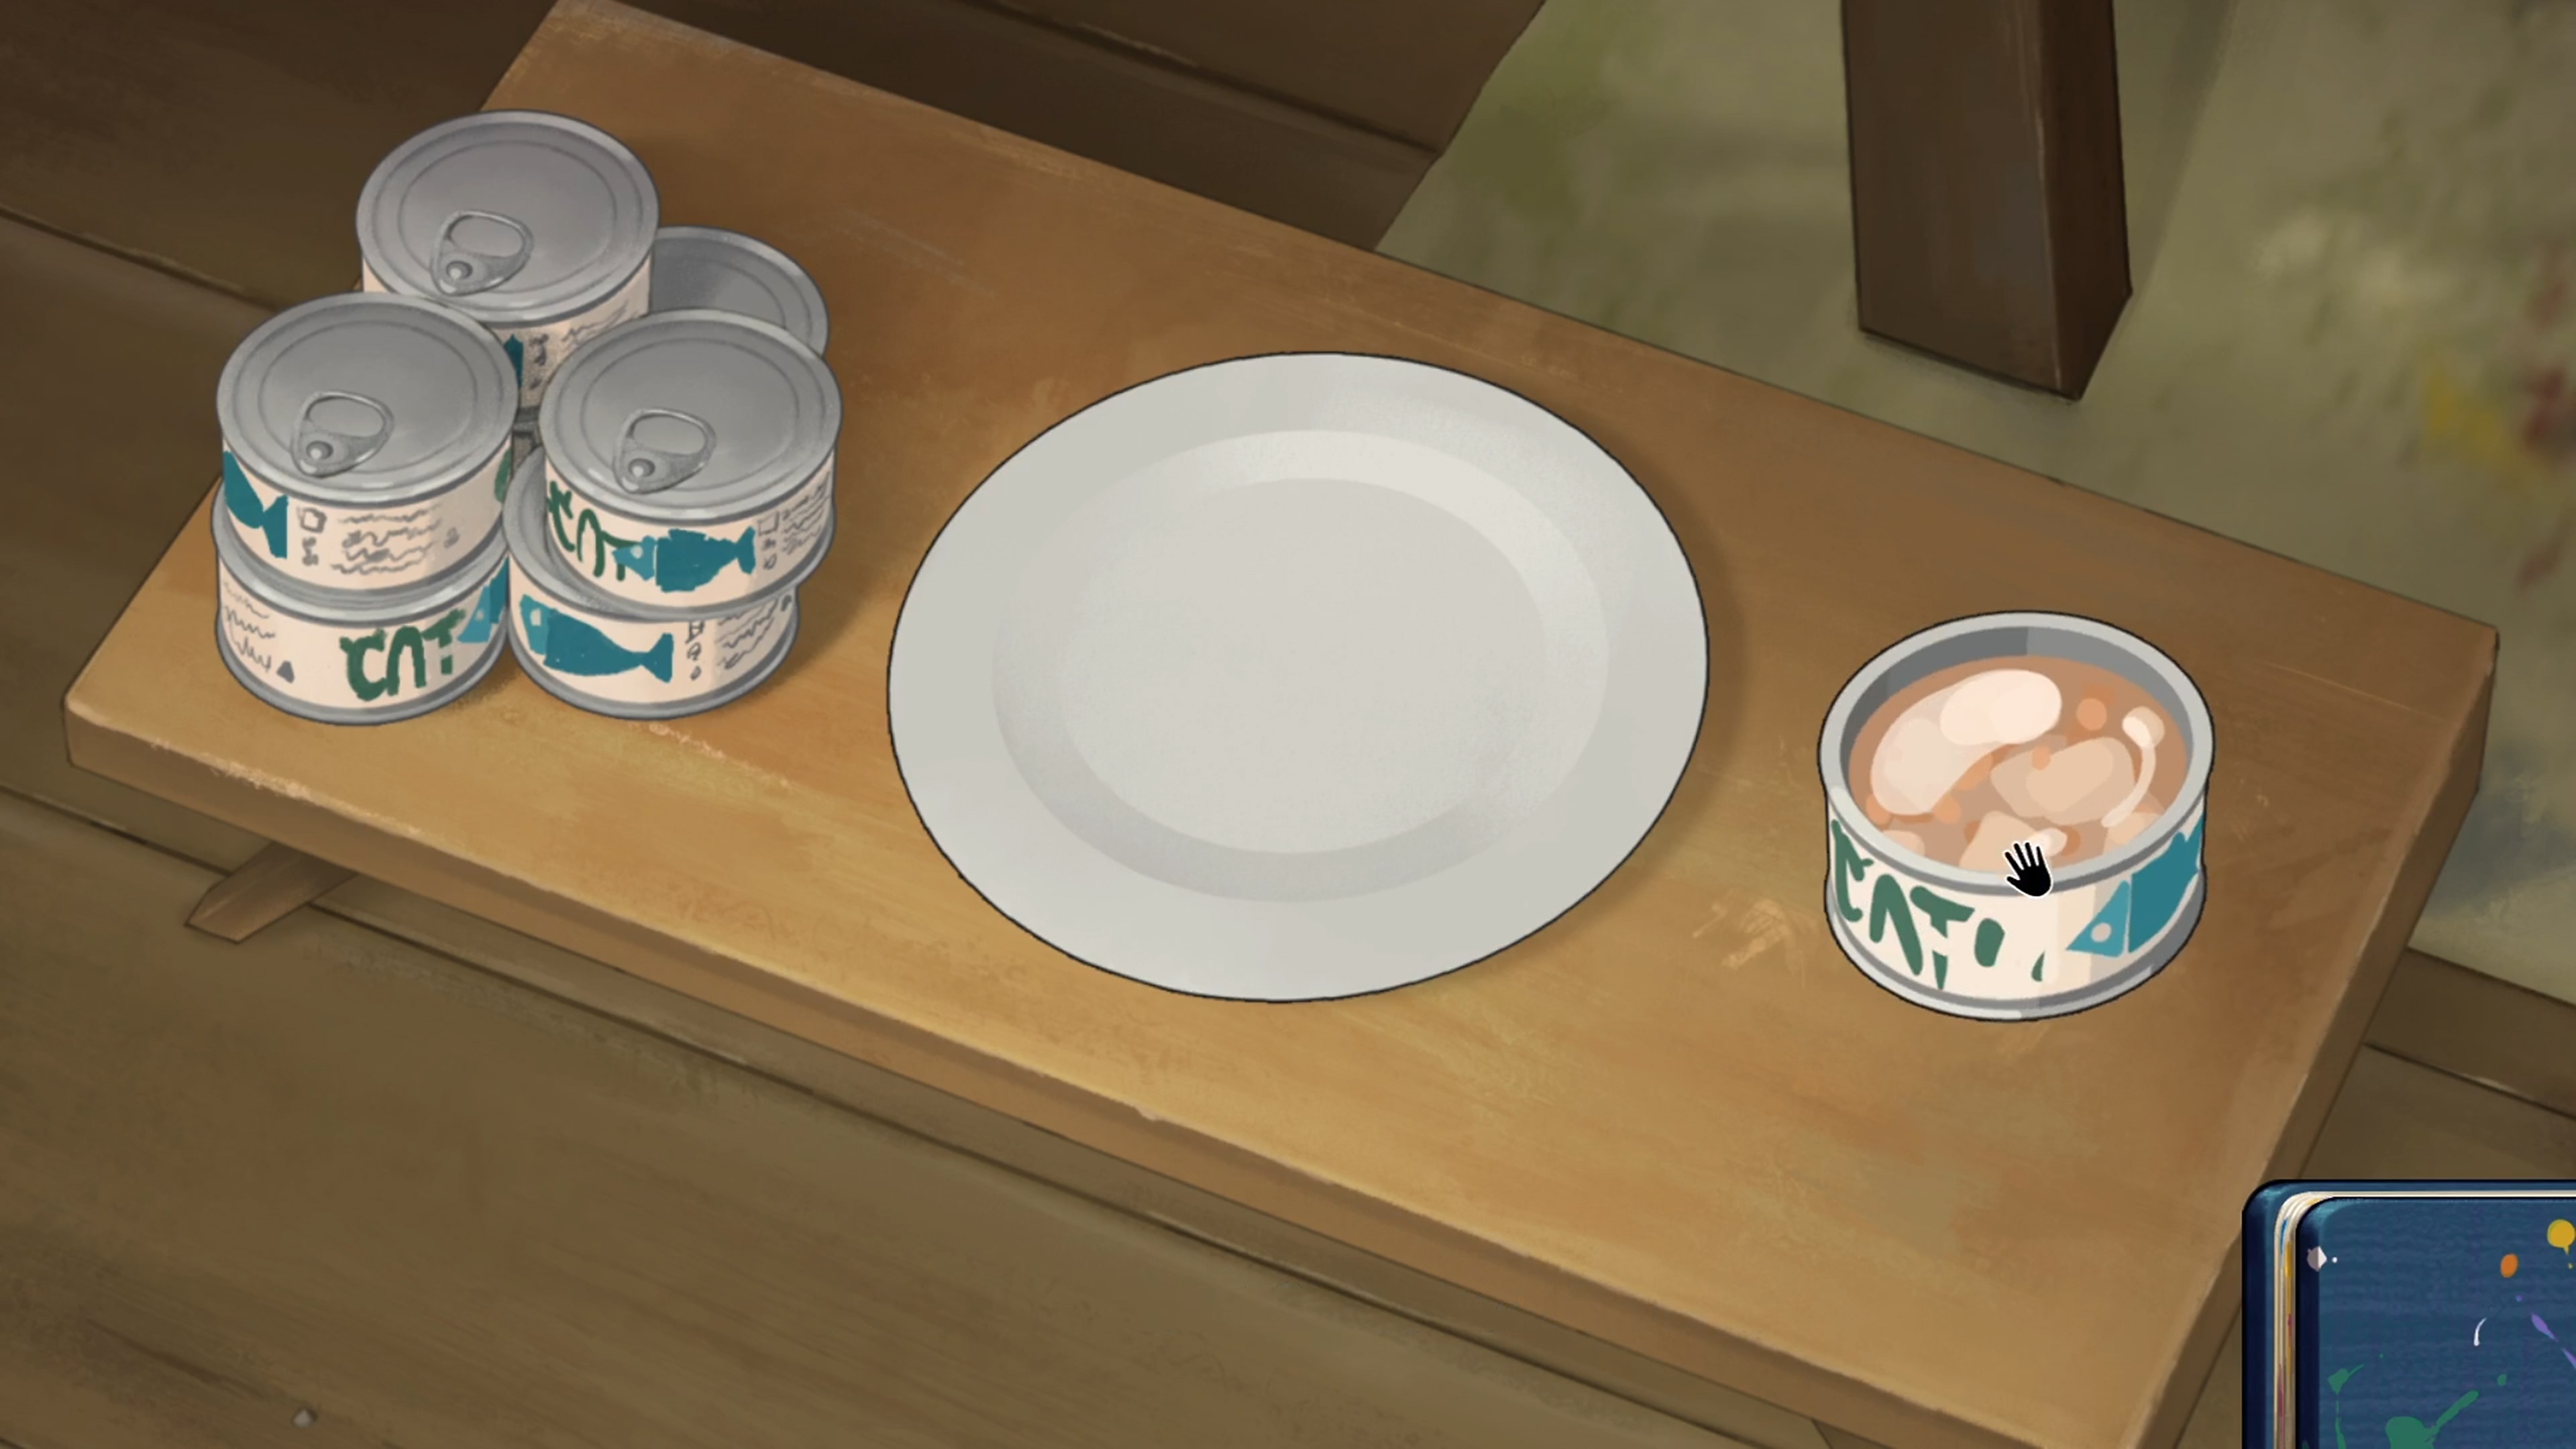 Behind the Frame: The Finest Scenery - captura de tela mostrando prato e latinhas de comida de gato na mesa